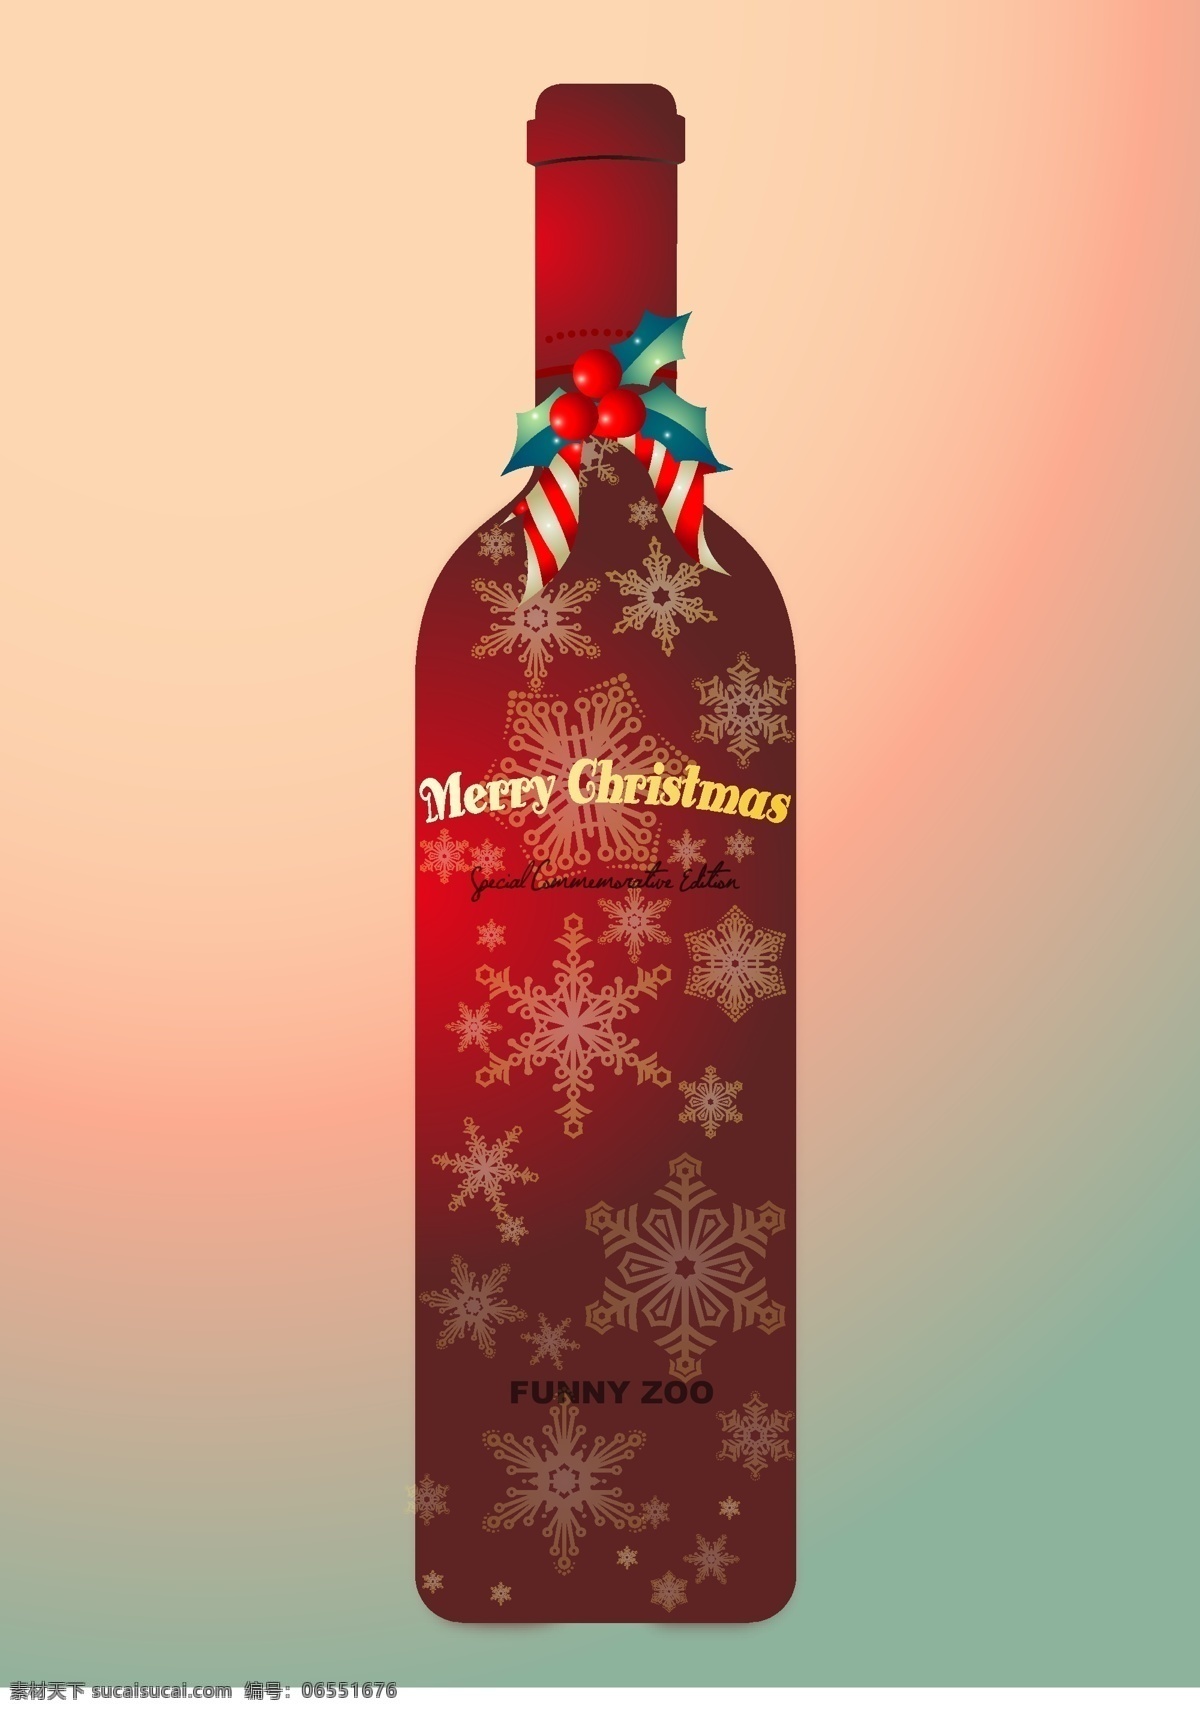 创意 酒瓶 包装设计 圣诞节 矢量 模板下载 创意酒瓶设计 psd源文件